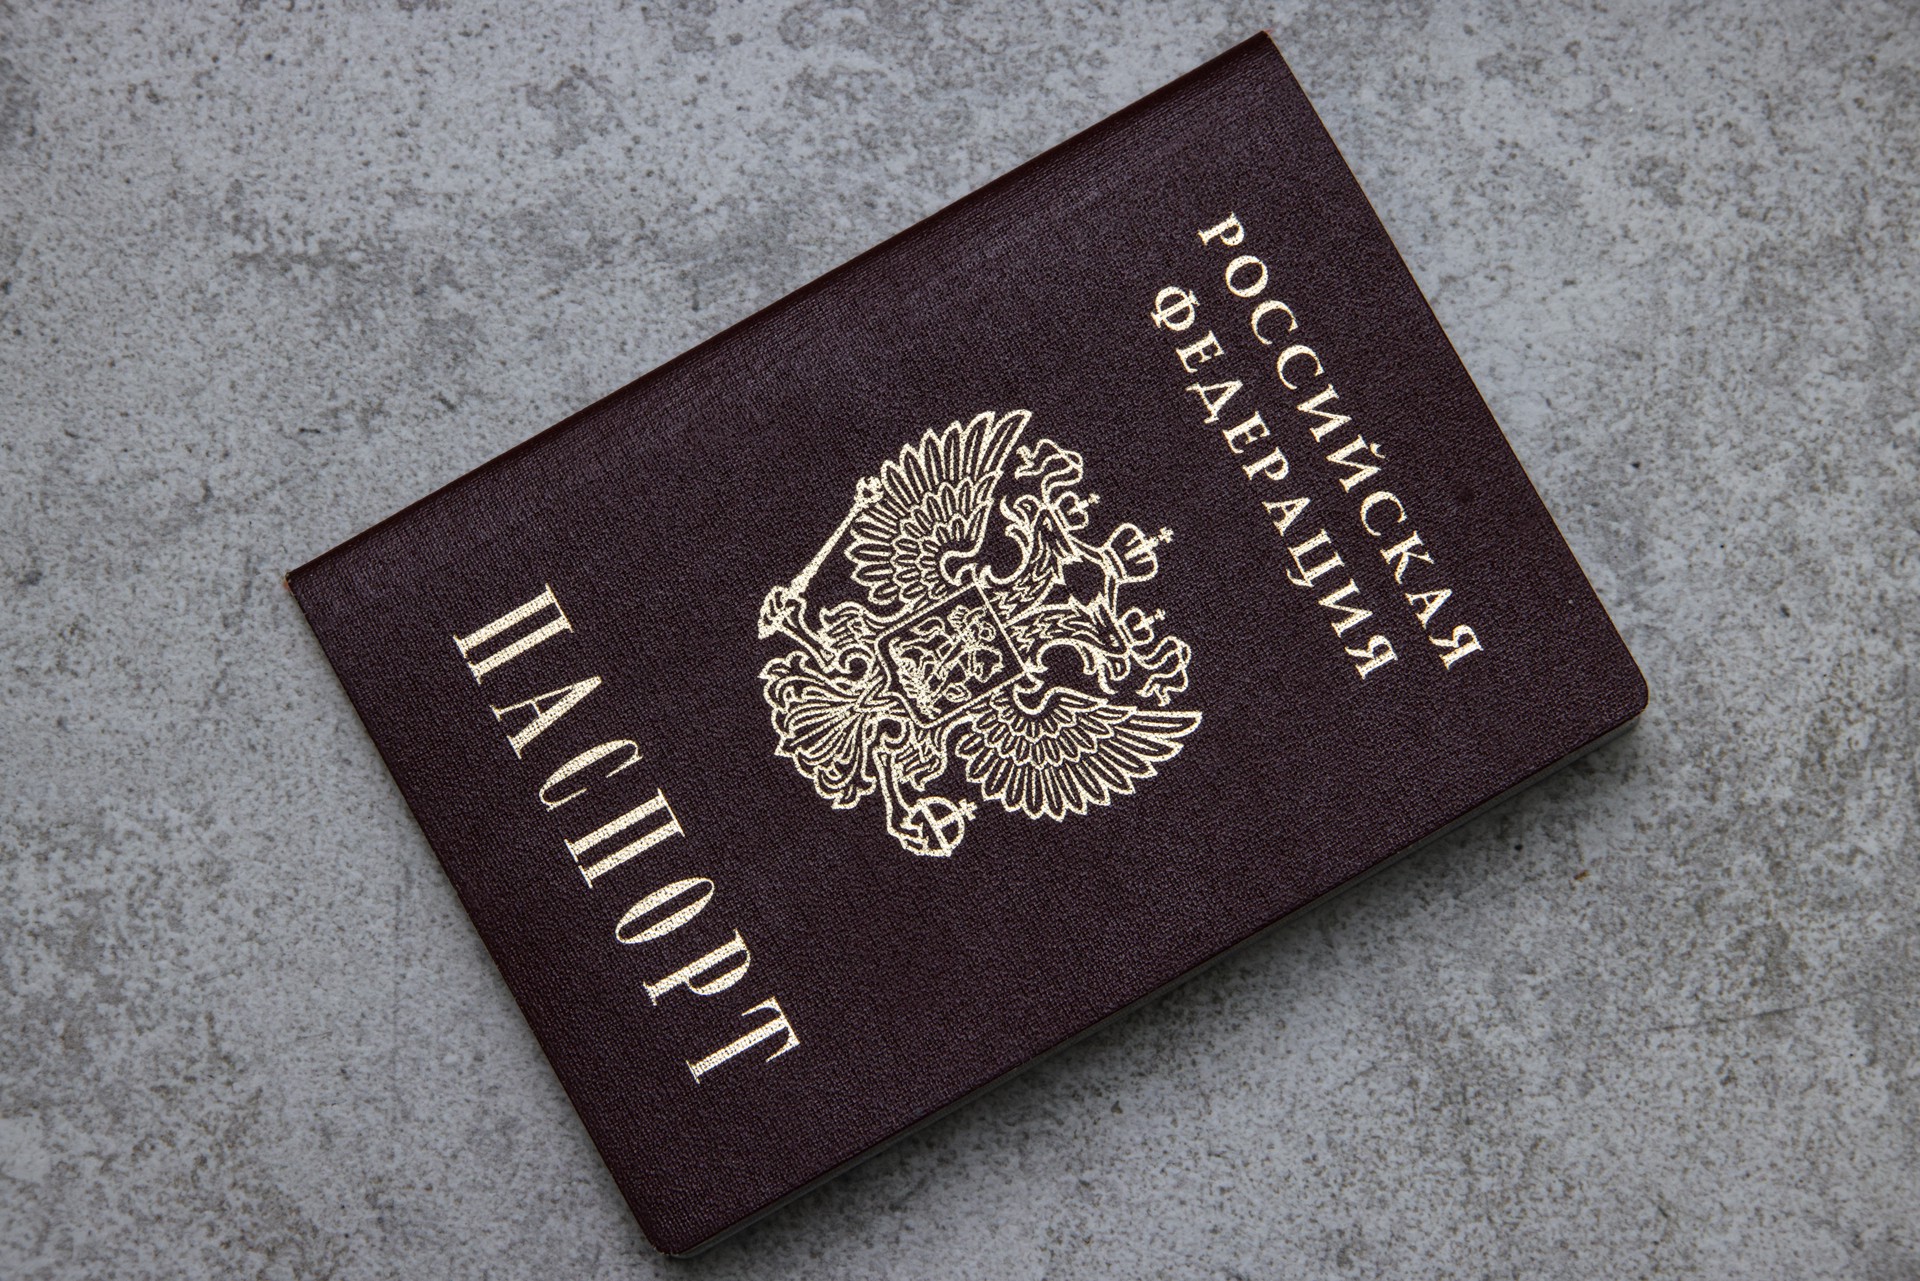 Екатеринбуржец присвоил себе миллионы экс-главы Росприроднадзора через поддельный паспорт